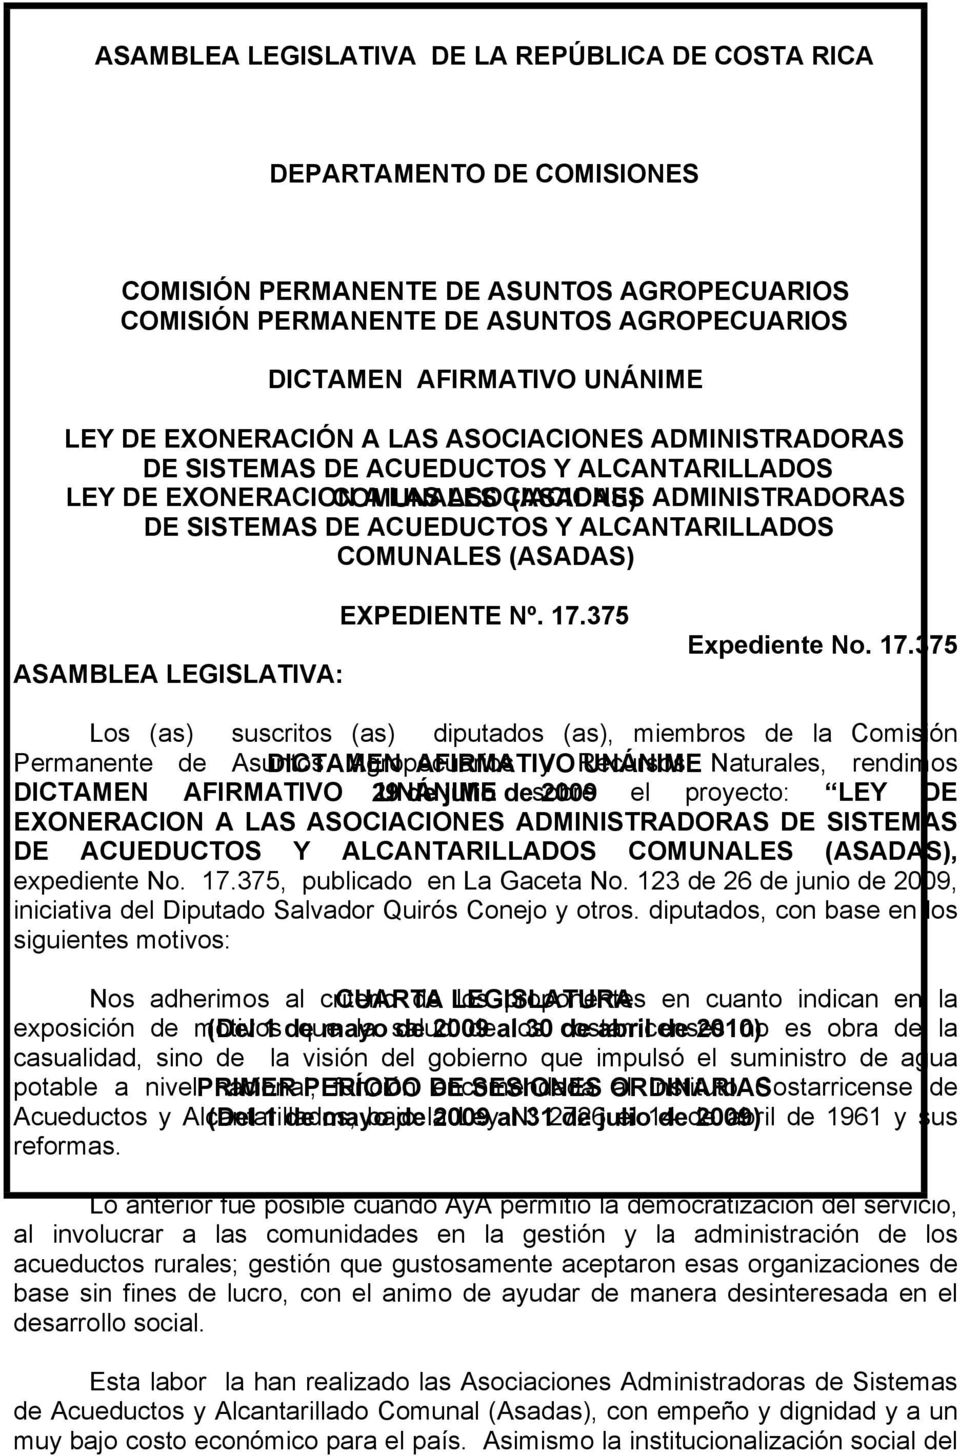 ALCANTARILLADOS COMUNALES (ASADAS) ASAMBLEA LEGISLATIVA: EXPEDIENTE Nº. 17.